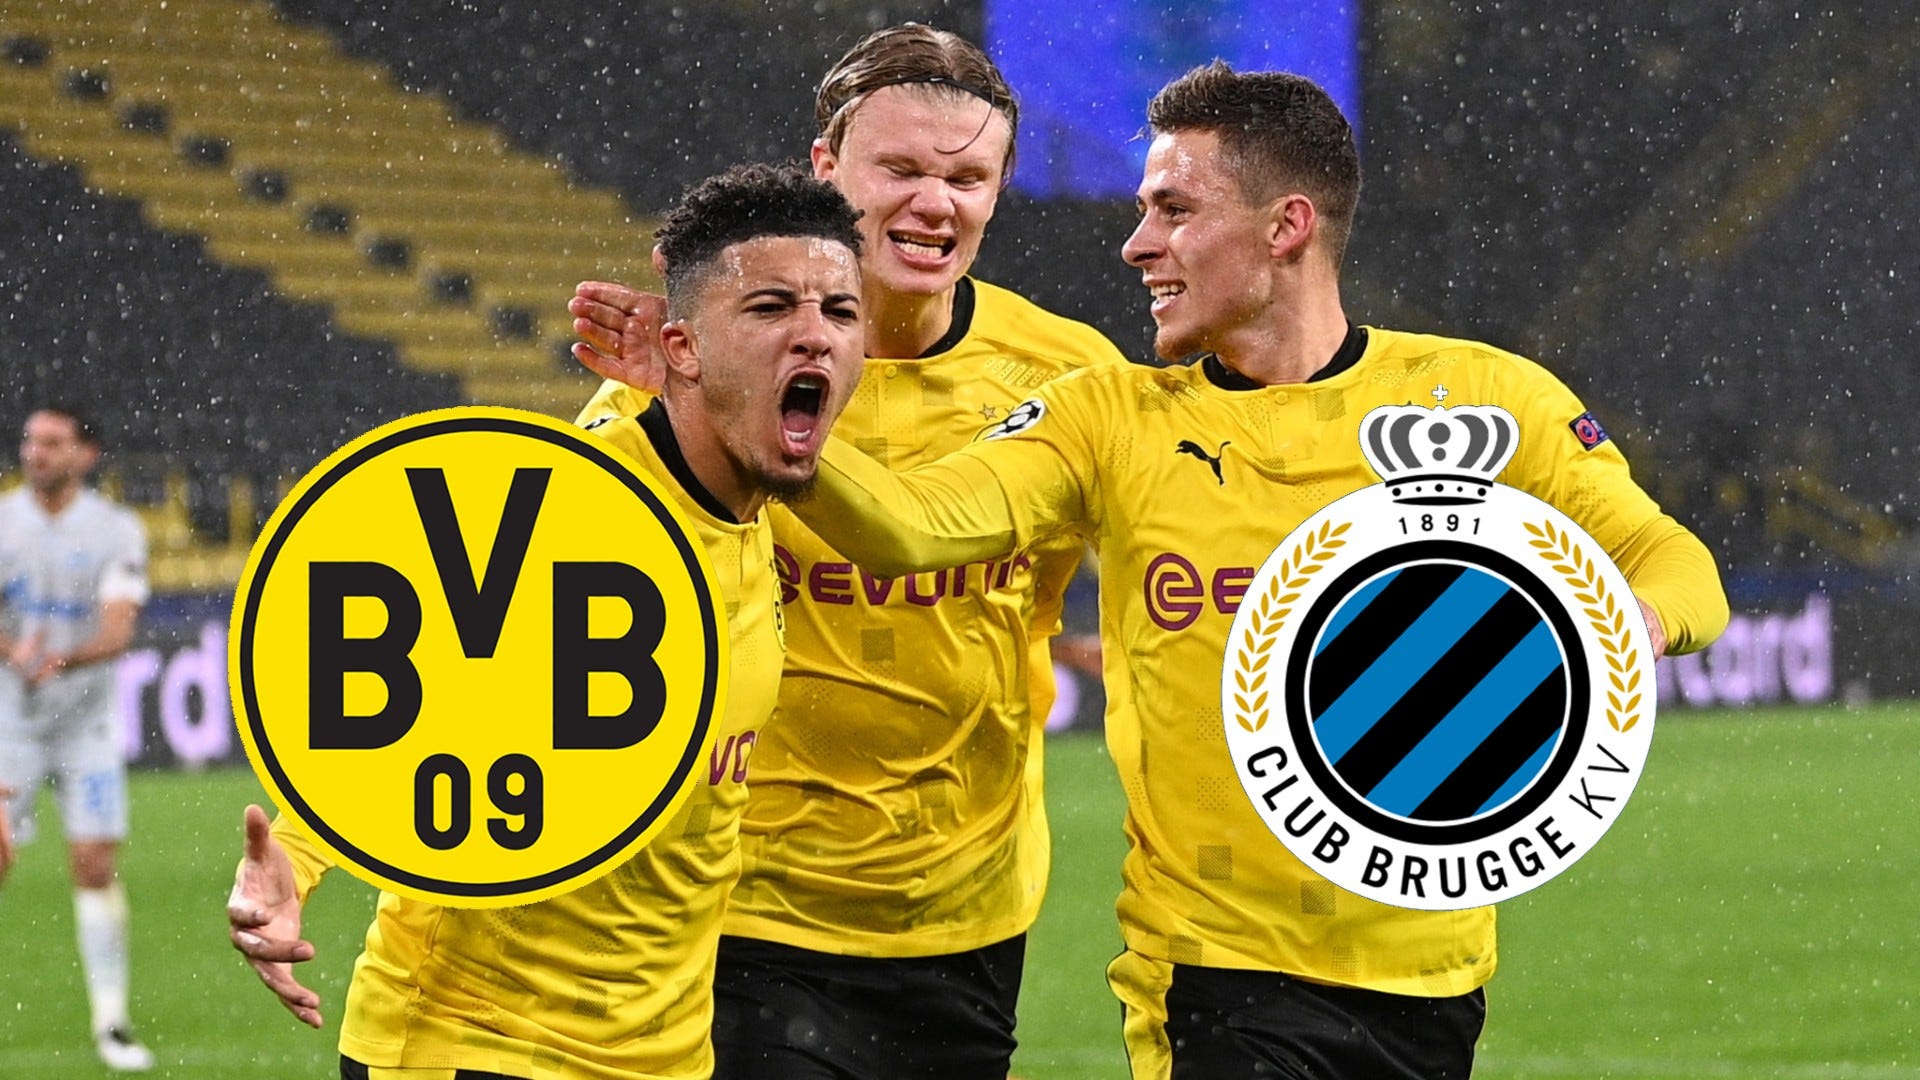 Fußball heute live im TV und LIVE-STREAM BVB (Borussia Dortmund) in Brügge Goal Deutschland